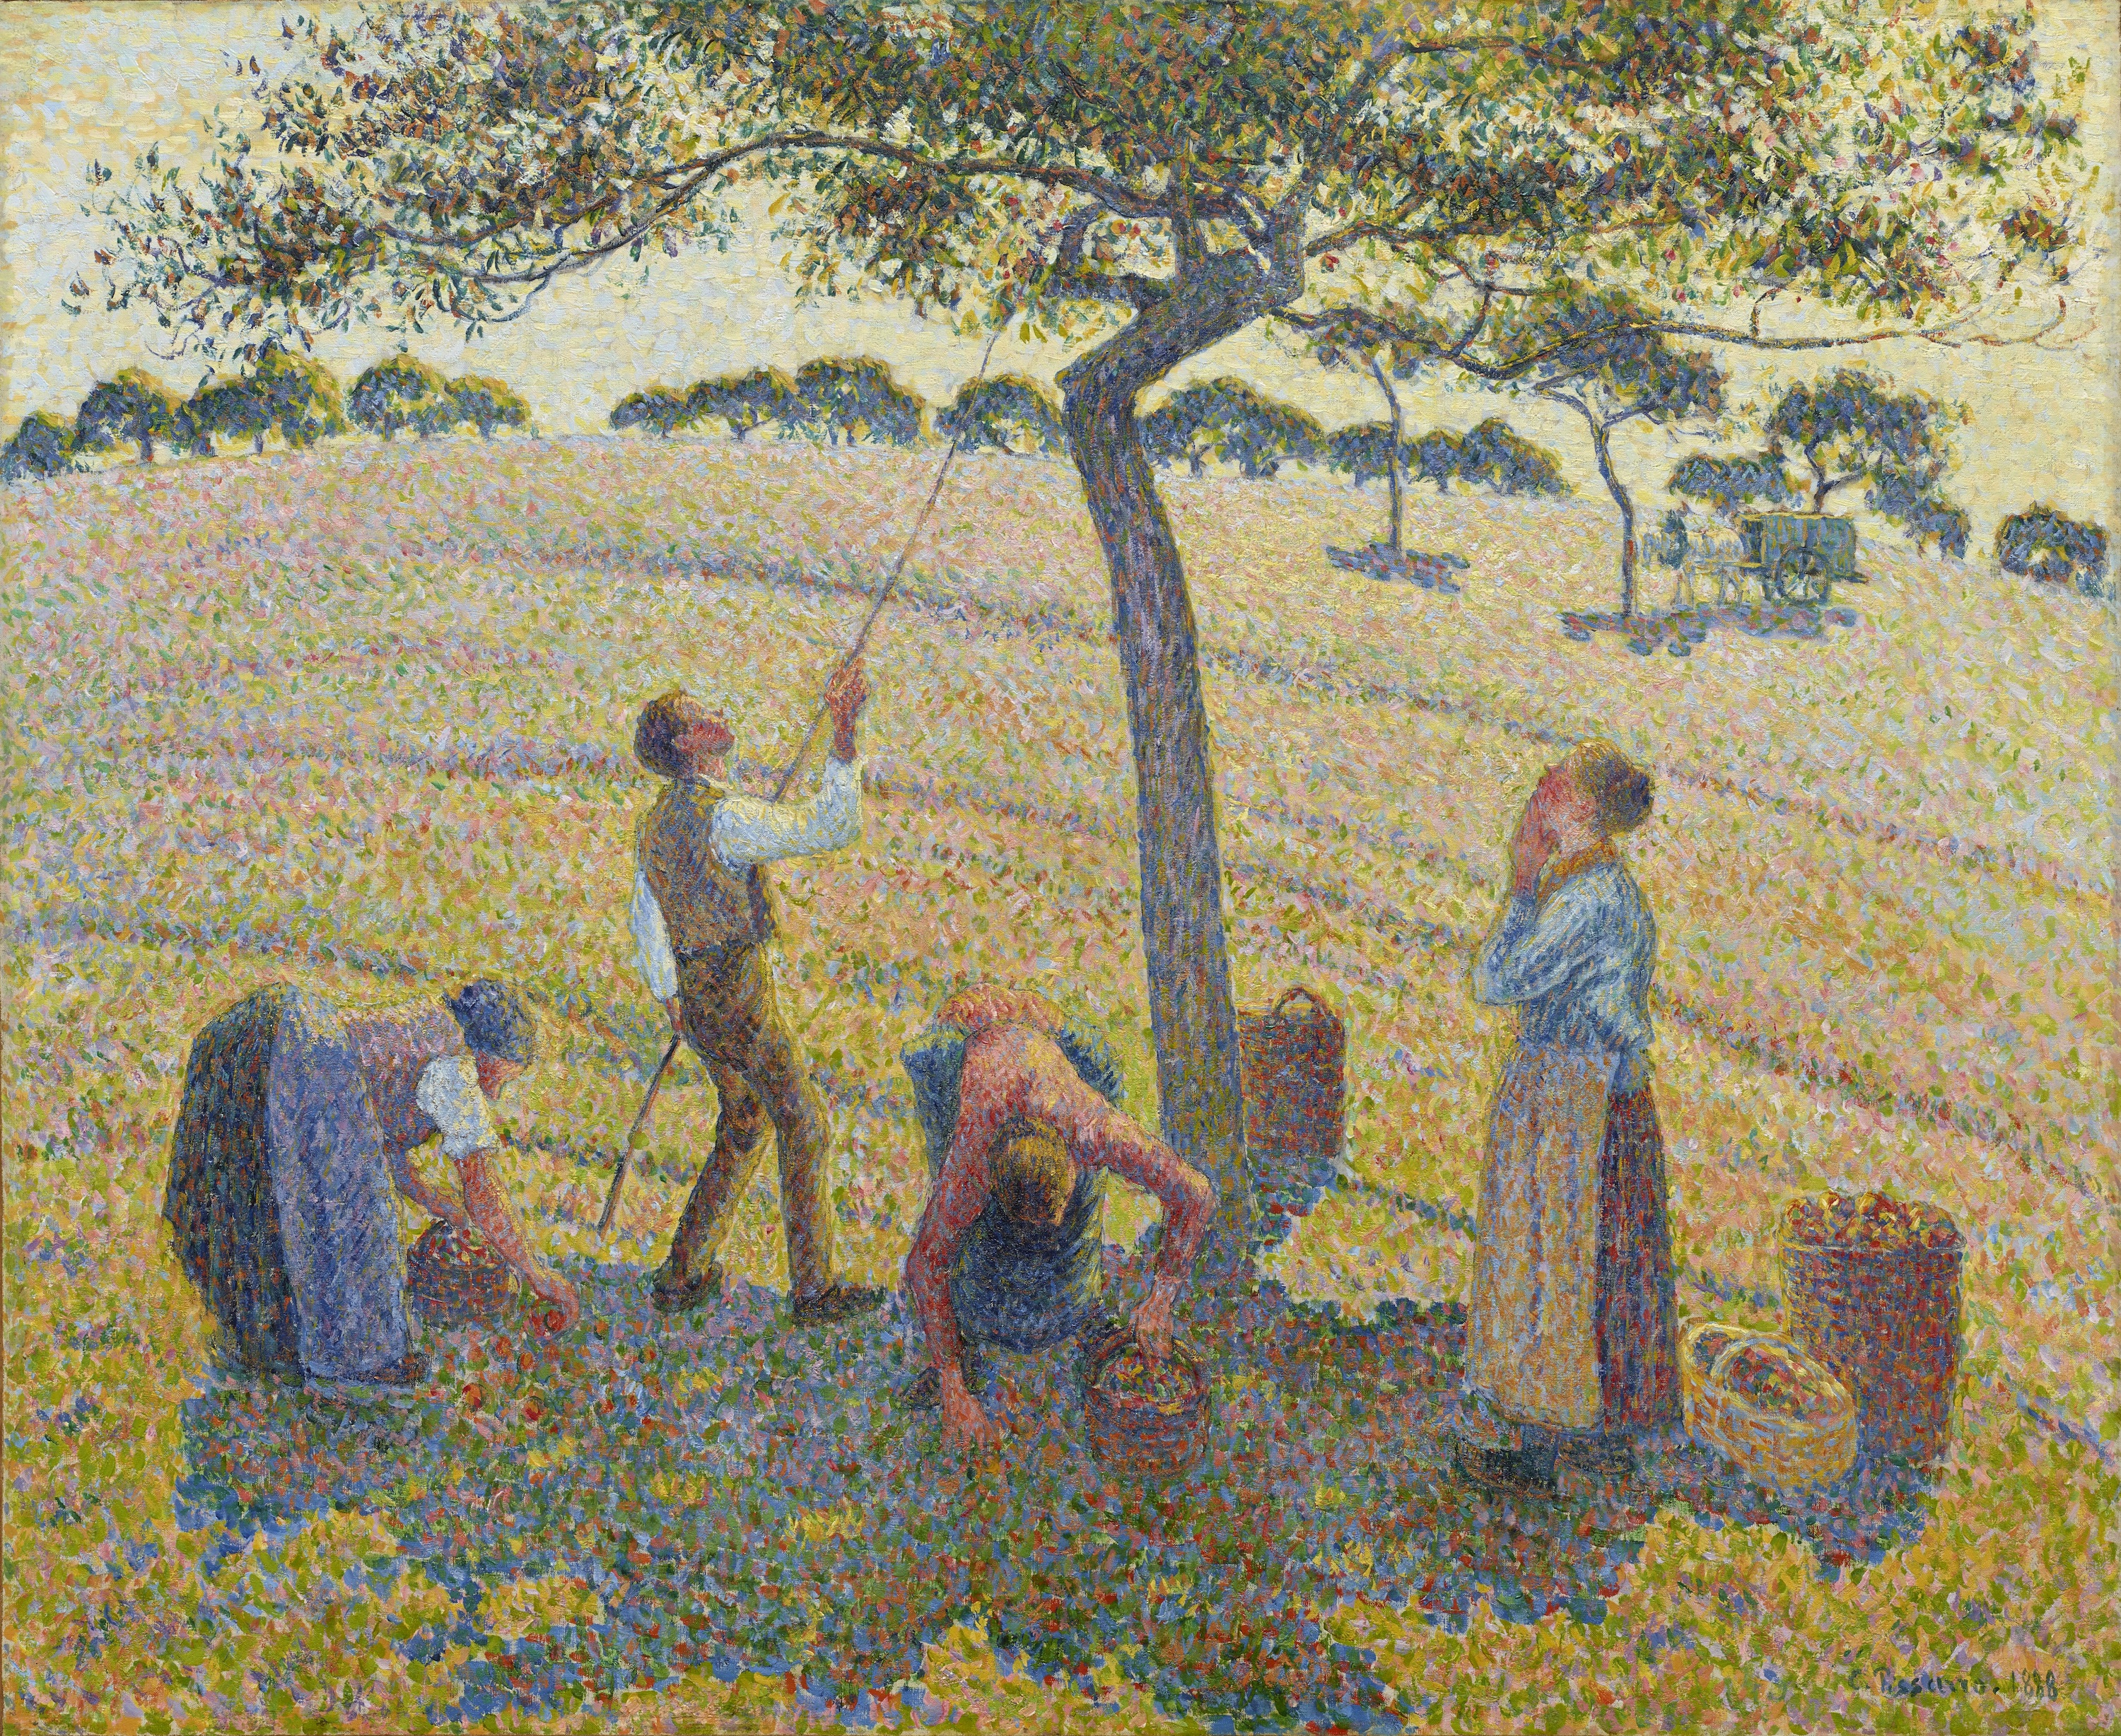 حصاد التفاح by Camille Pissarro - 1888 - 61 x 74 cm 